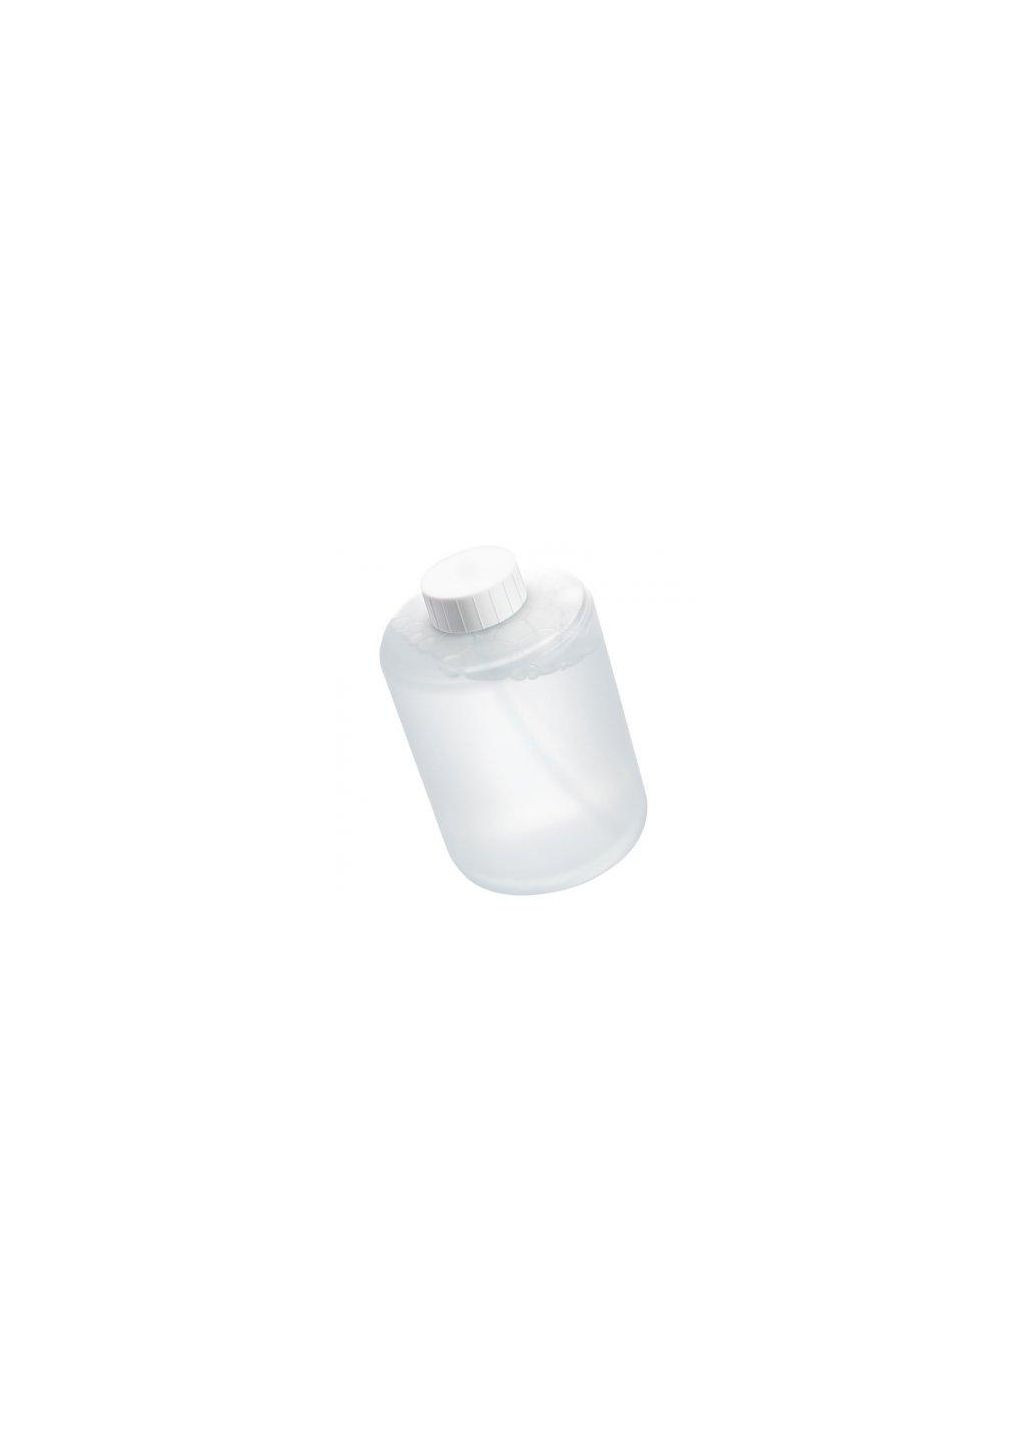 Сменный картридж (мыло) для MiJia Automatic Soap Dispenser (PMYJXSY01XW) белый Xiaomi (280877710)